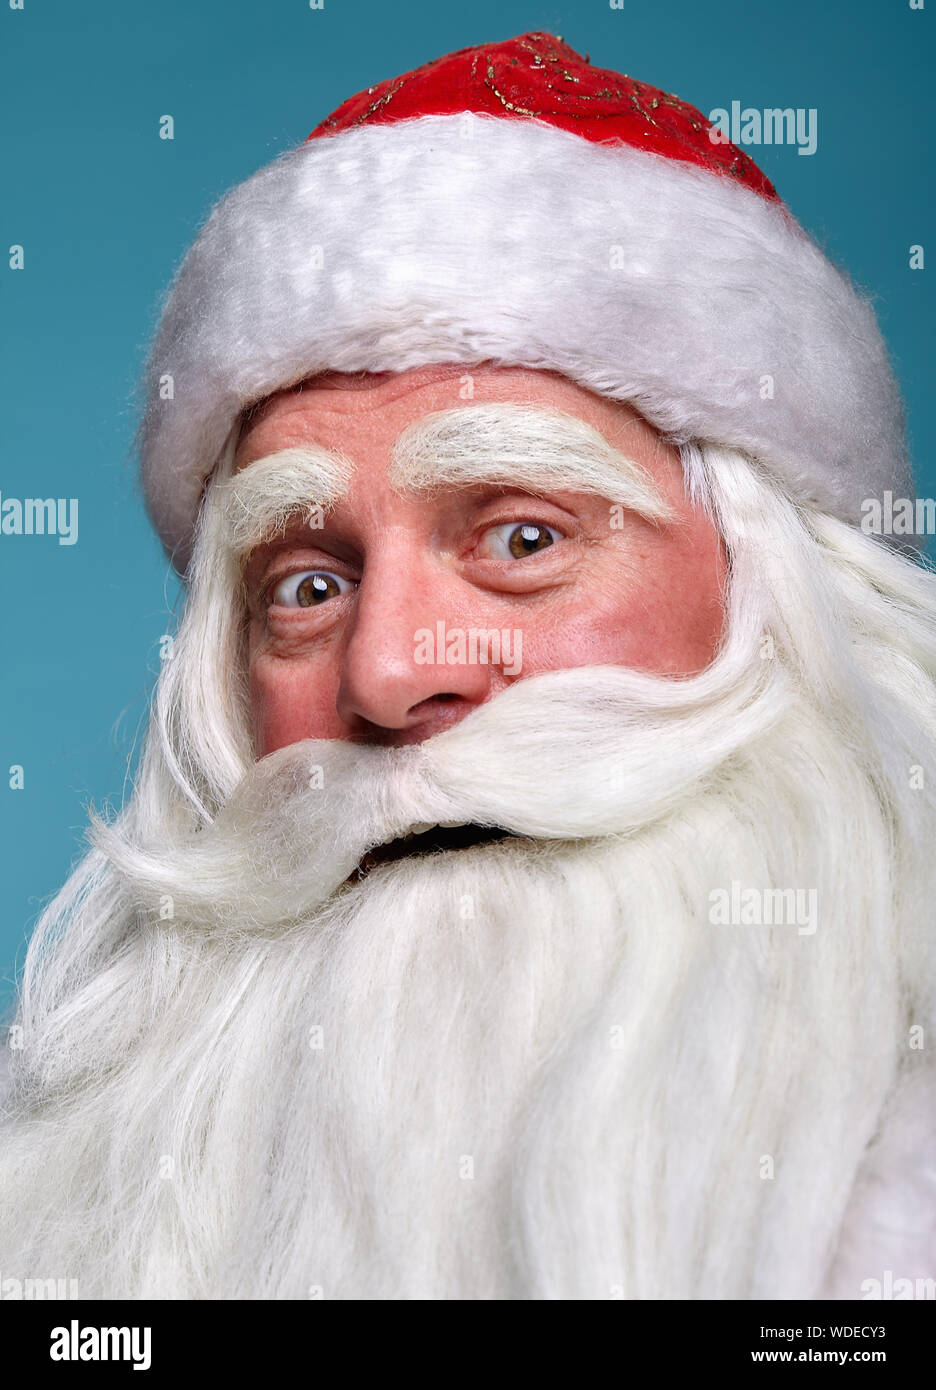 Close-up Weihnachten Gesicht portrait von russiad Santa Claus Ded Moroz mit weit geöffneten Augen an Kamera suchen, die in der Überraschung. Weißhaariger älterer Mann mit Wh Stockfoto